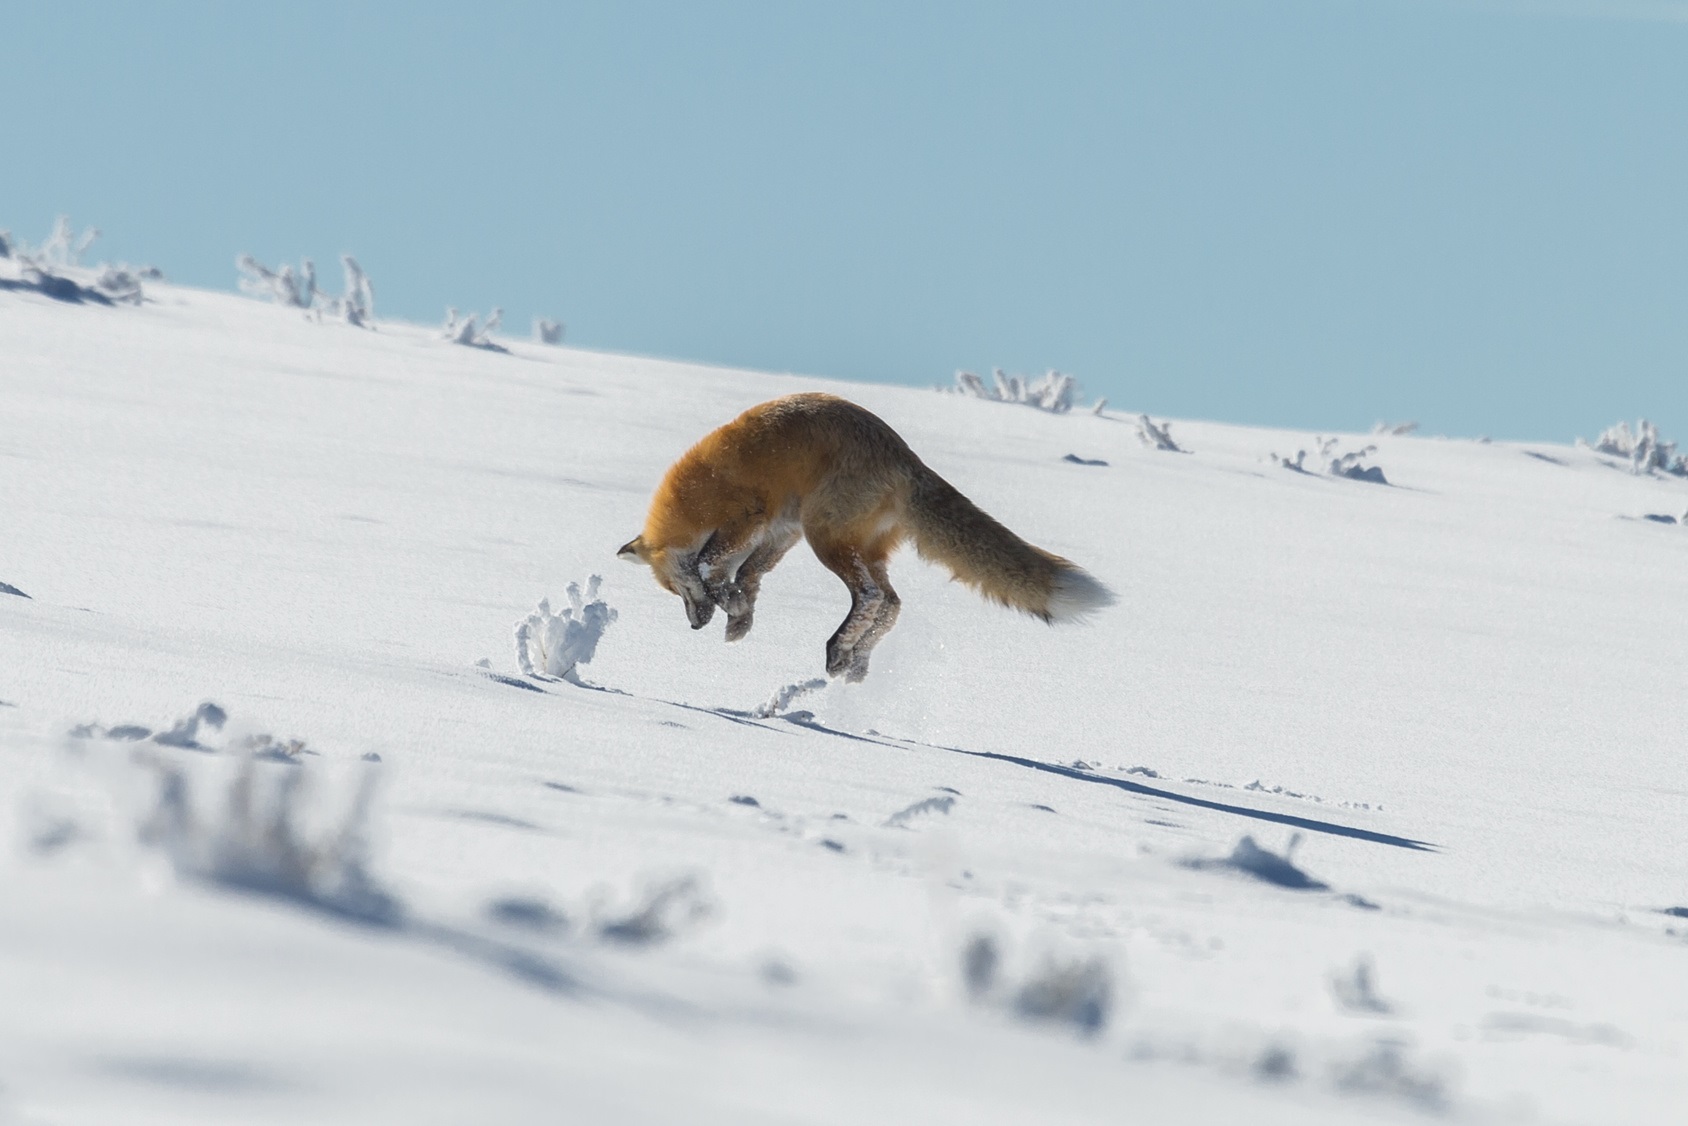 Le renard roux cherche sa proie sous la neige. © mtnmichelle, Fotolia